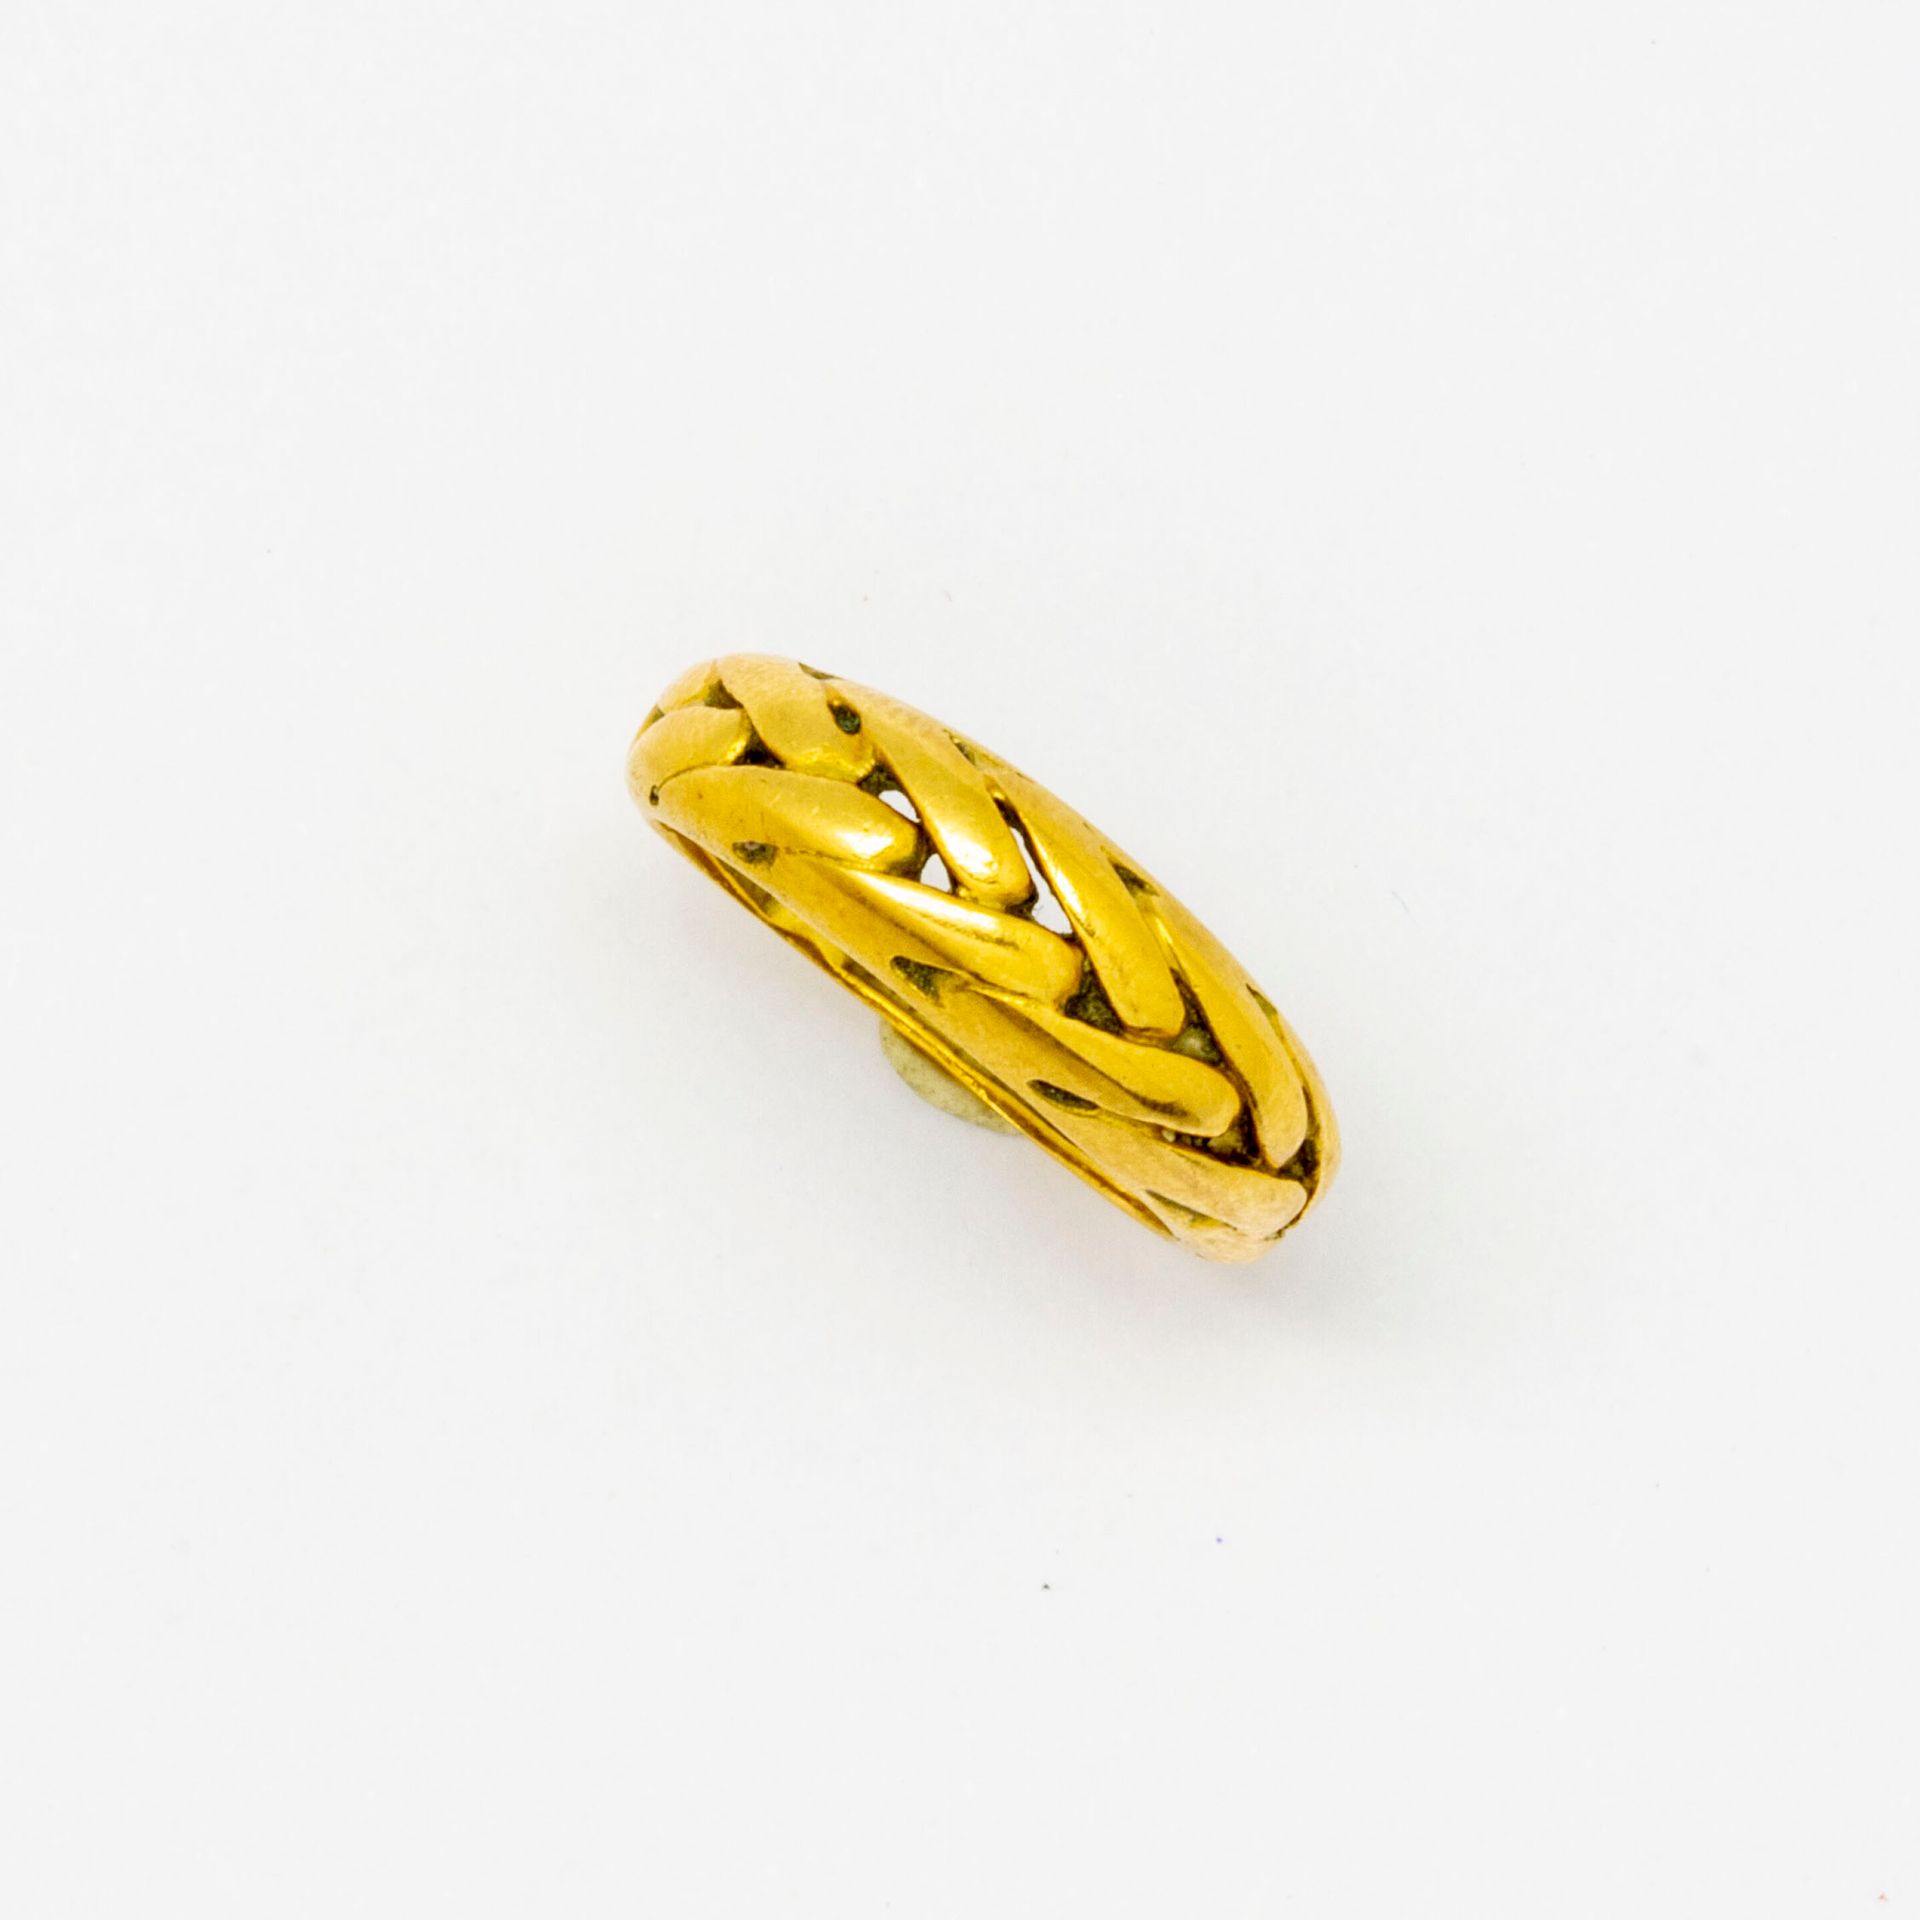 Null Ring aus Gelbgold mit Ährenmotiv.

Gewicht: 3,5 g